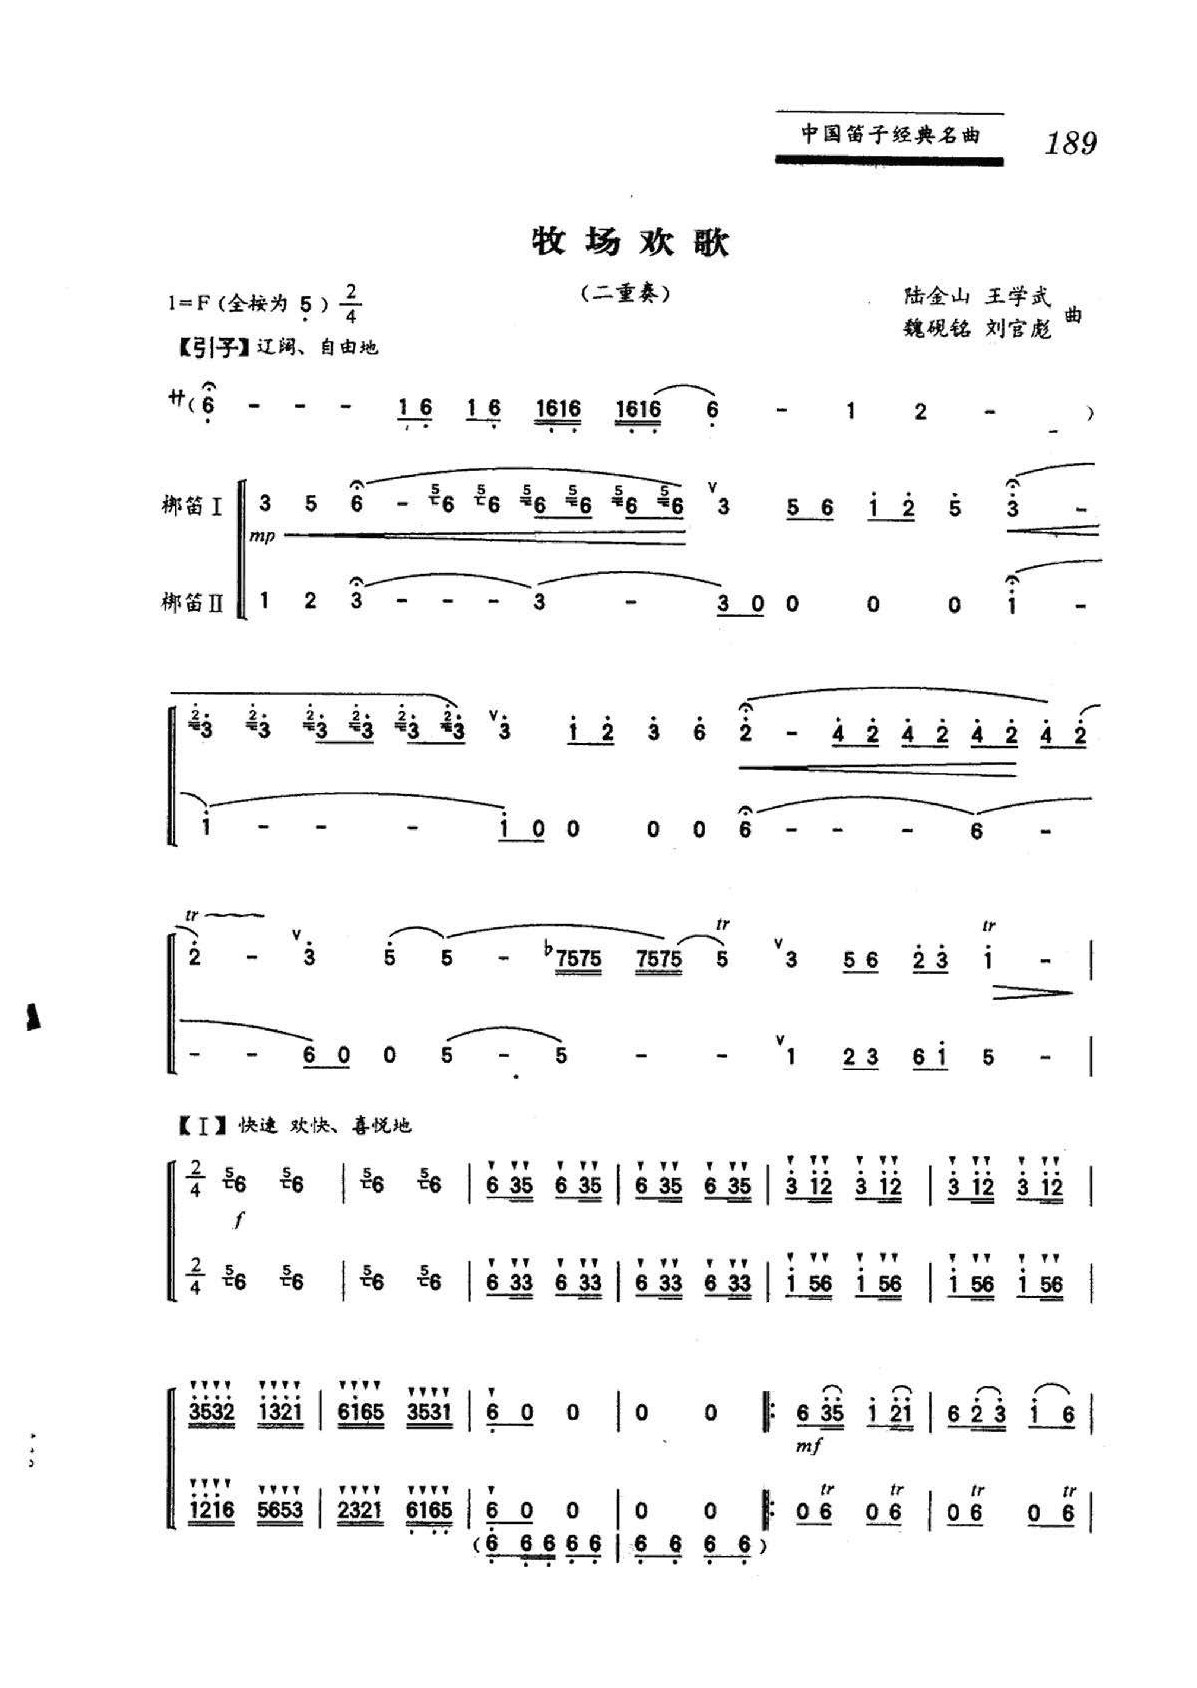 中国笛子名曲《牧场欢歌》陆金山、王学武、魏砚铭、刘官彪曲